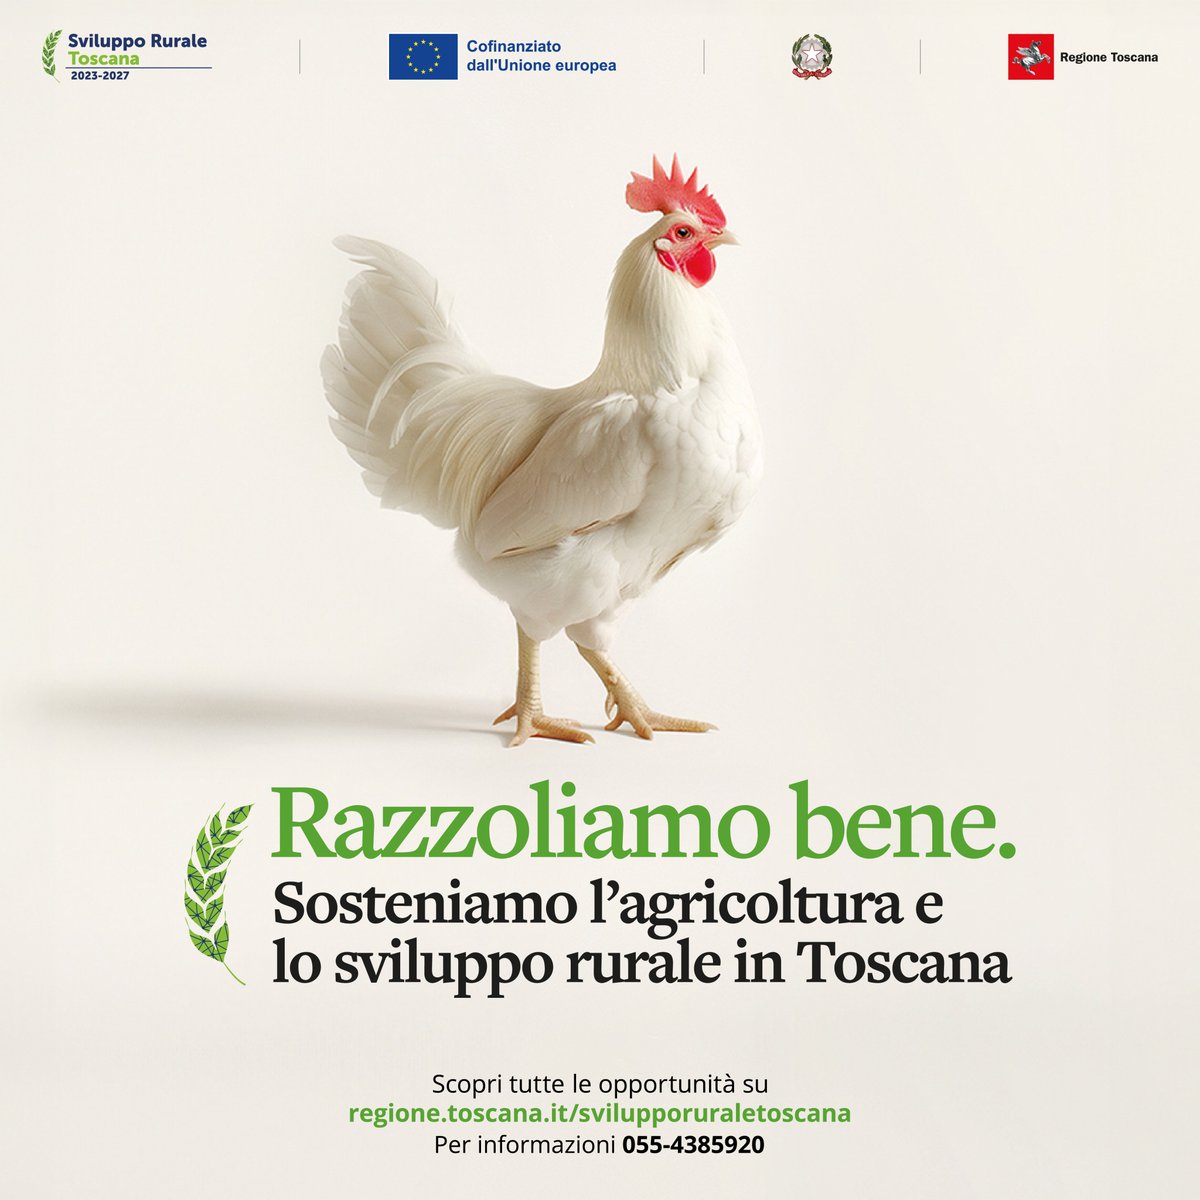 Con il Fondo europeo agricolo per lo sviluppo rurale, la Regione Toscana supporta progetti, investimenti e idee per la crescita del settore agricolo, alimentare e forestale, migliorando la qualità della vita di tutti noi. 👉Scopri di più: regione.toscana.it/svilupporurale…